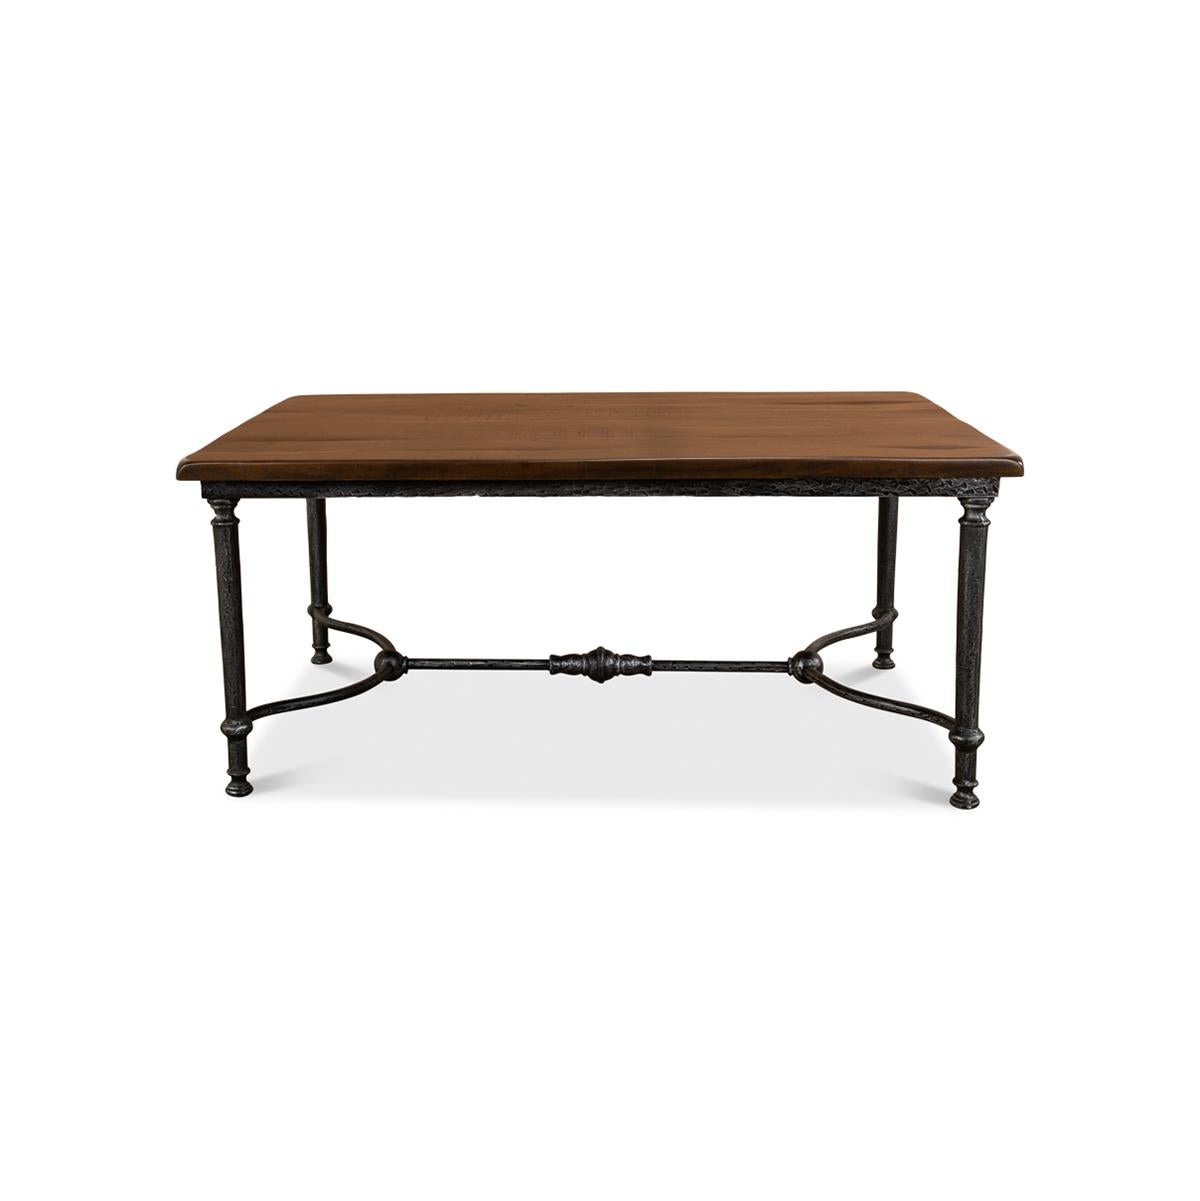 Dieser handgefertigte Tisch ist ideal für einen weniger formellen Lebensstil. Seine Platte besteht aus wiederverwerteten Holzbrettern, die mit einem schmiedeeisernen Fuß mit natürlicher Oberfläche verbunden sind. Mit seinen Maßen bietet dieses